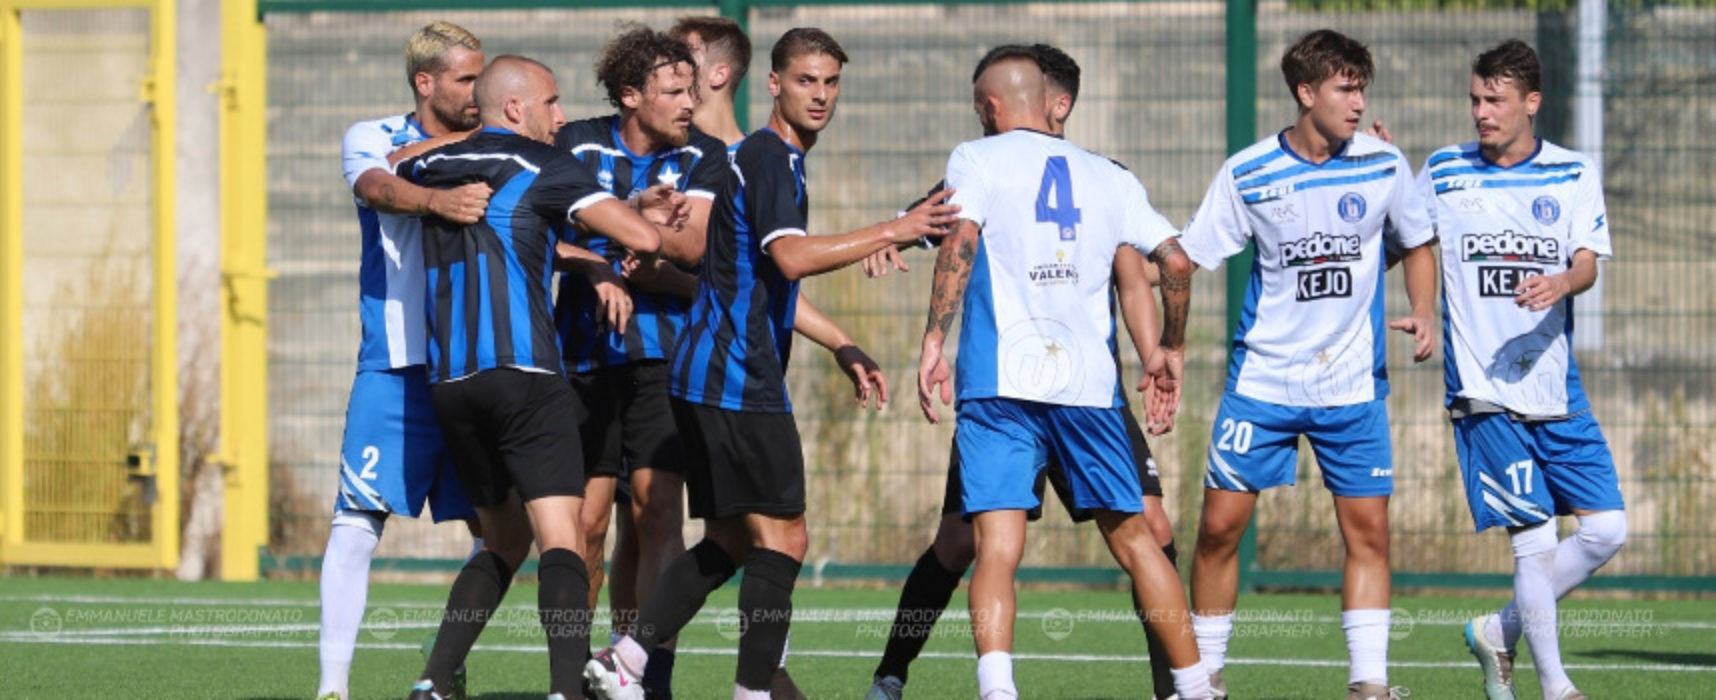 Bisceglie Calcio, Bucaro si presenta: “Daremo filo da torcere a tutti”